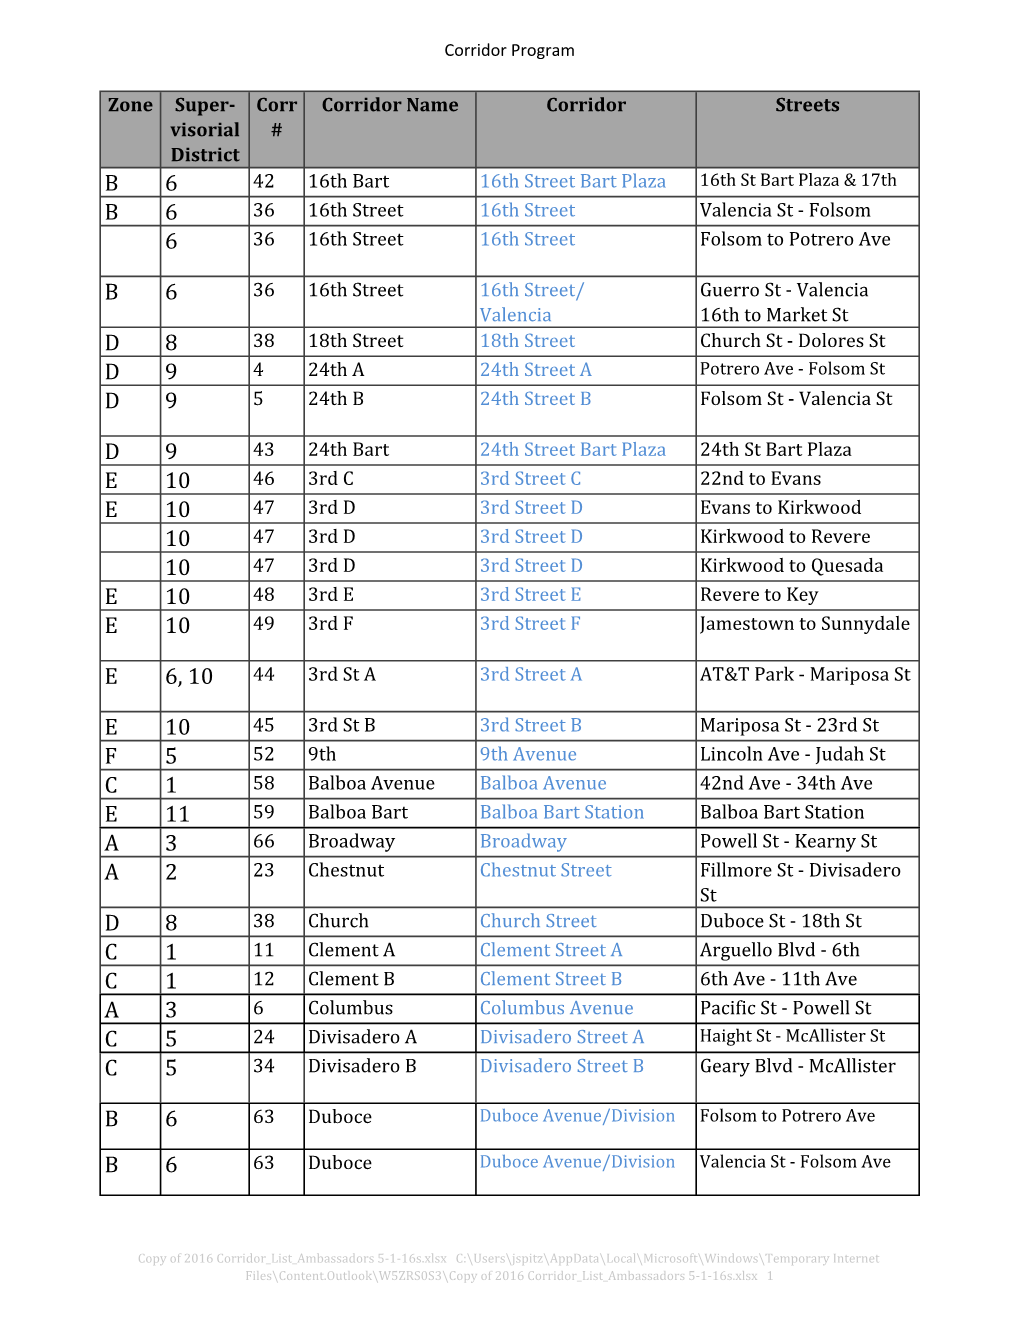 Copy of 2016 Corridor List Ambassadors 5-1